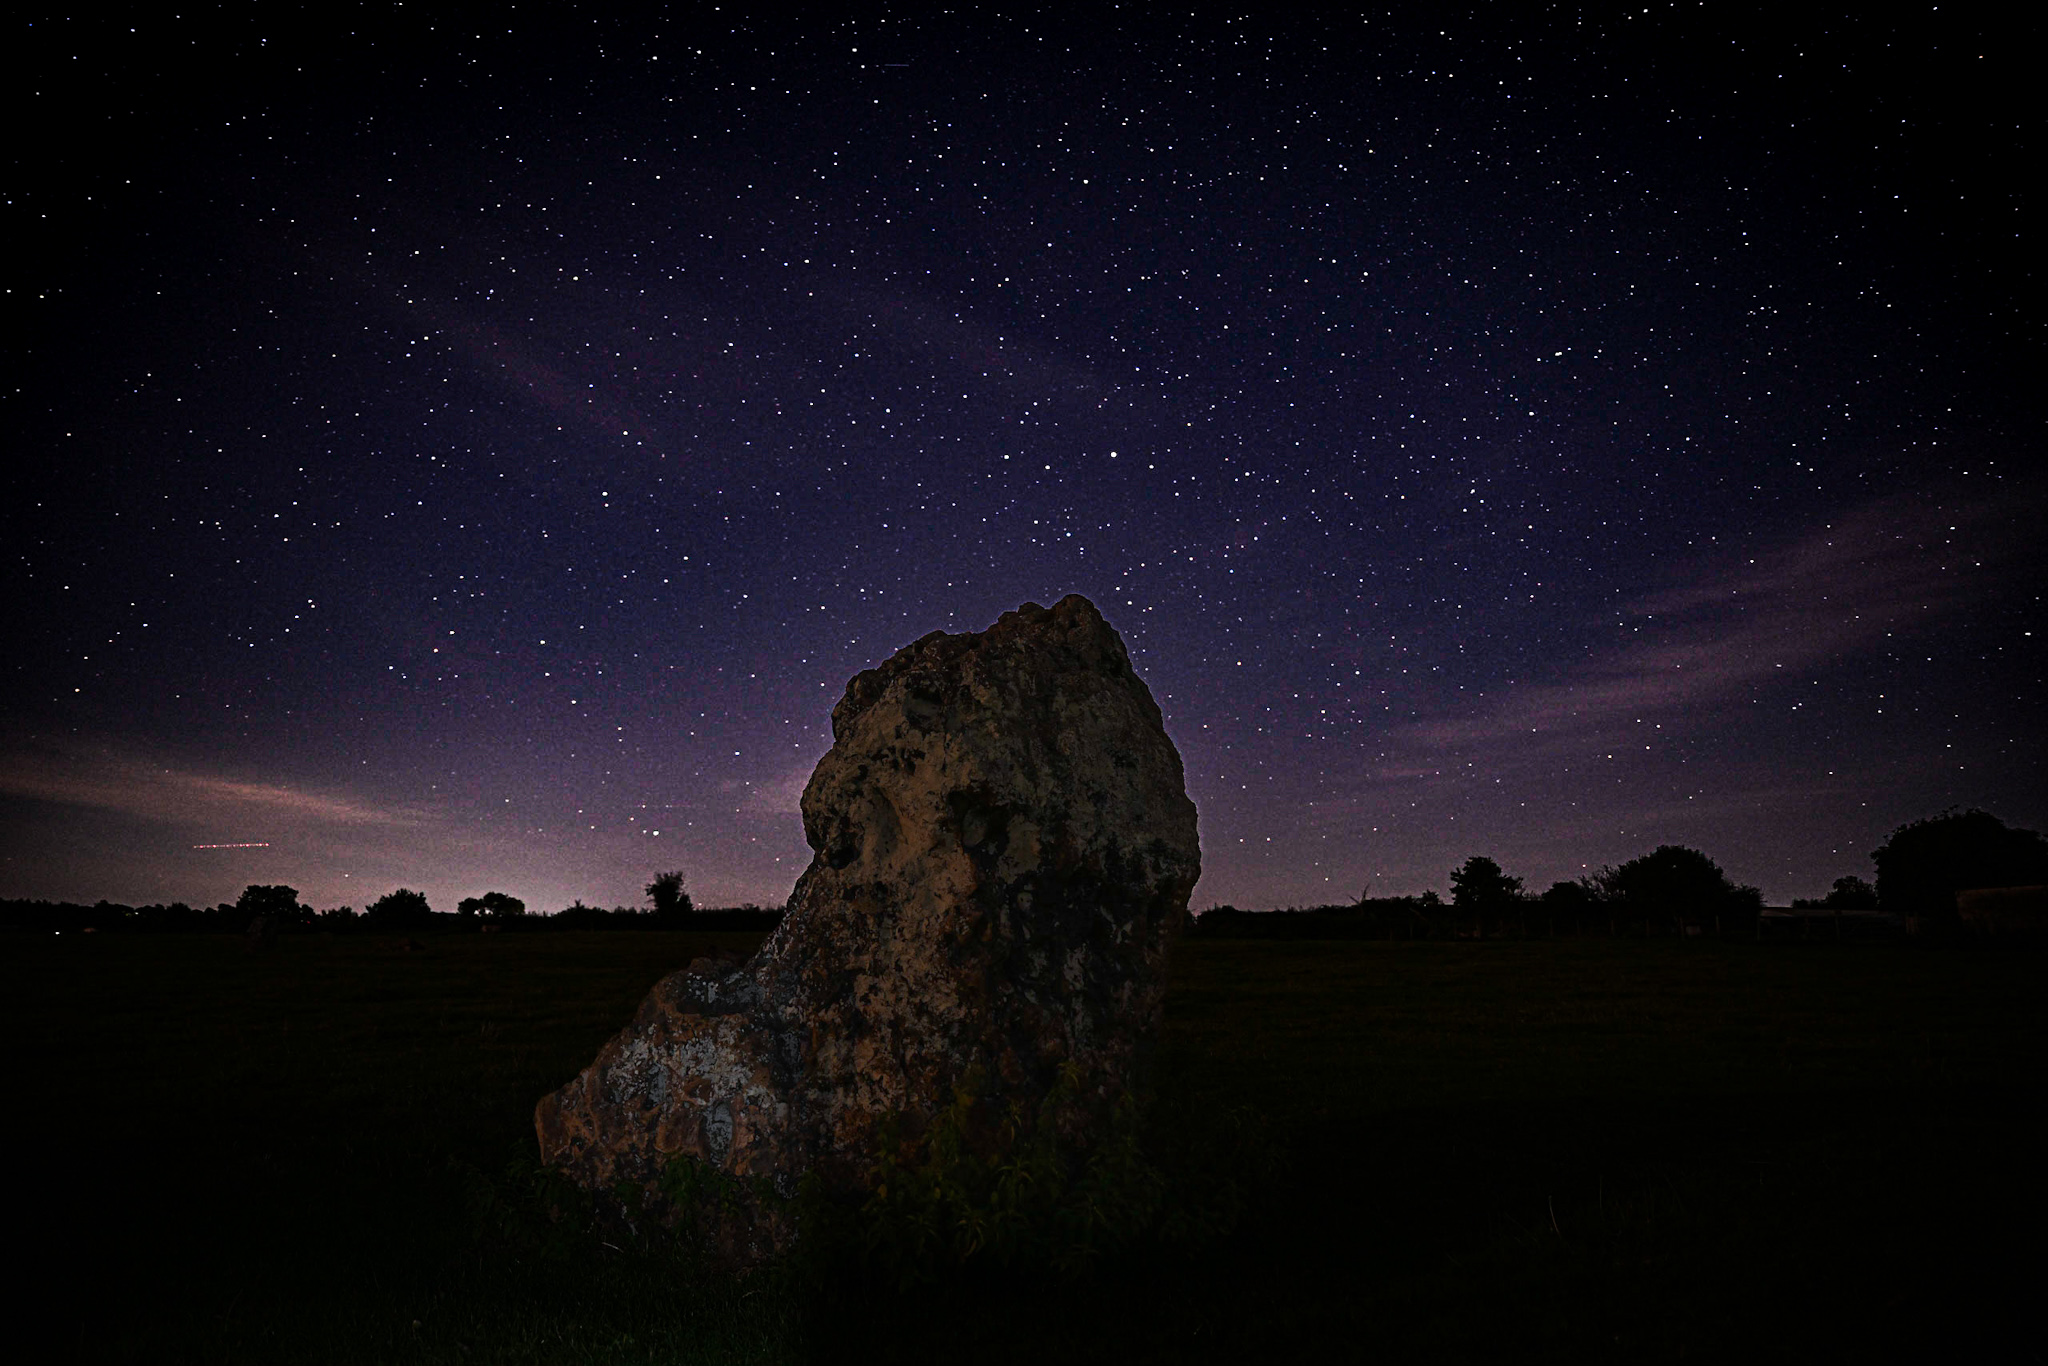 Voorbeeldafbeelding met de nachtelijke hemel boven een grote steen in een landschap op de voorgrond